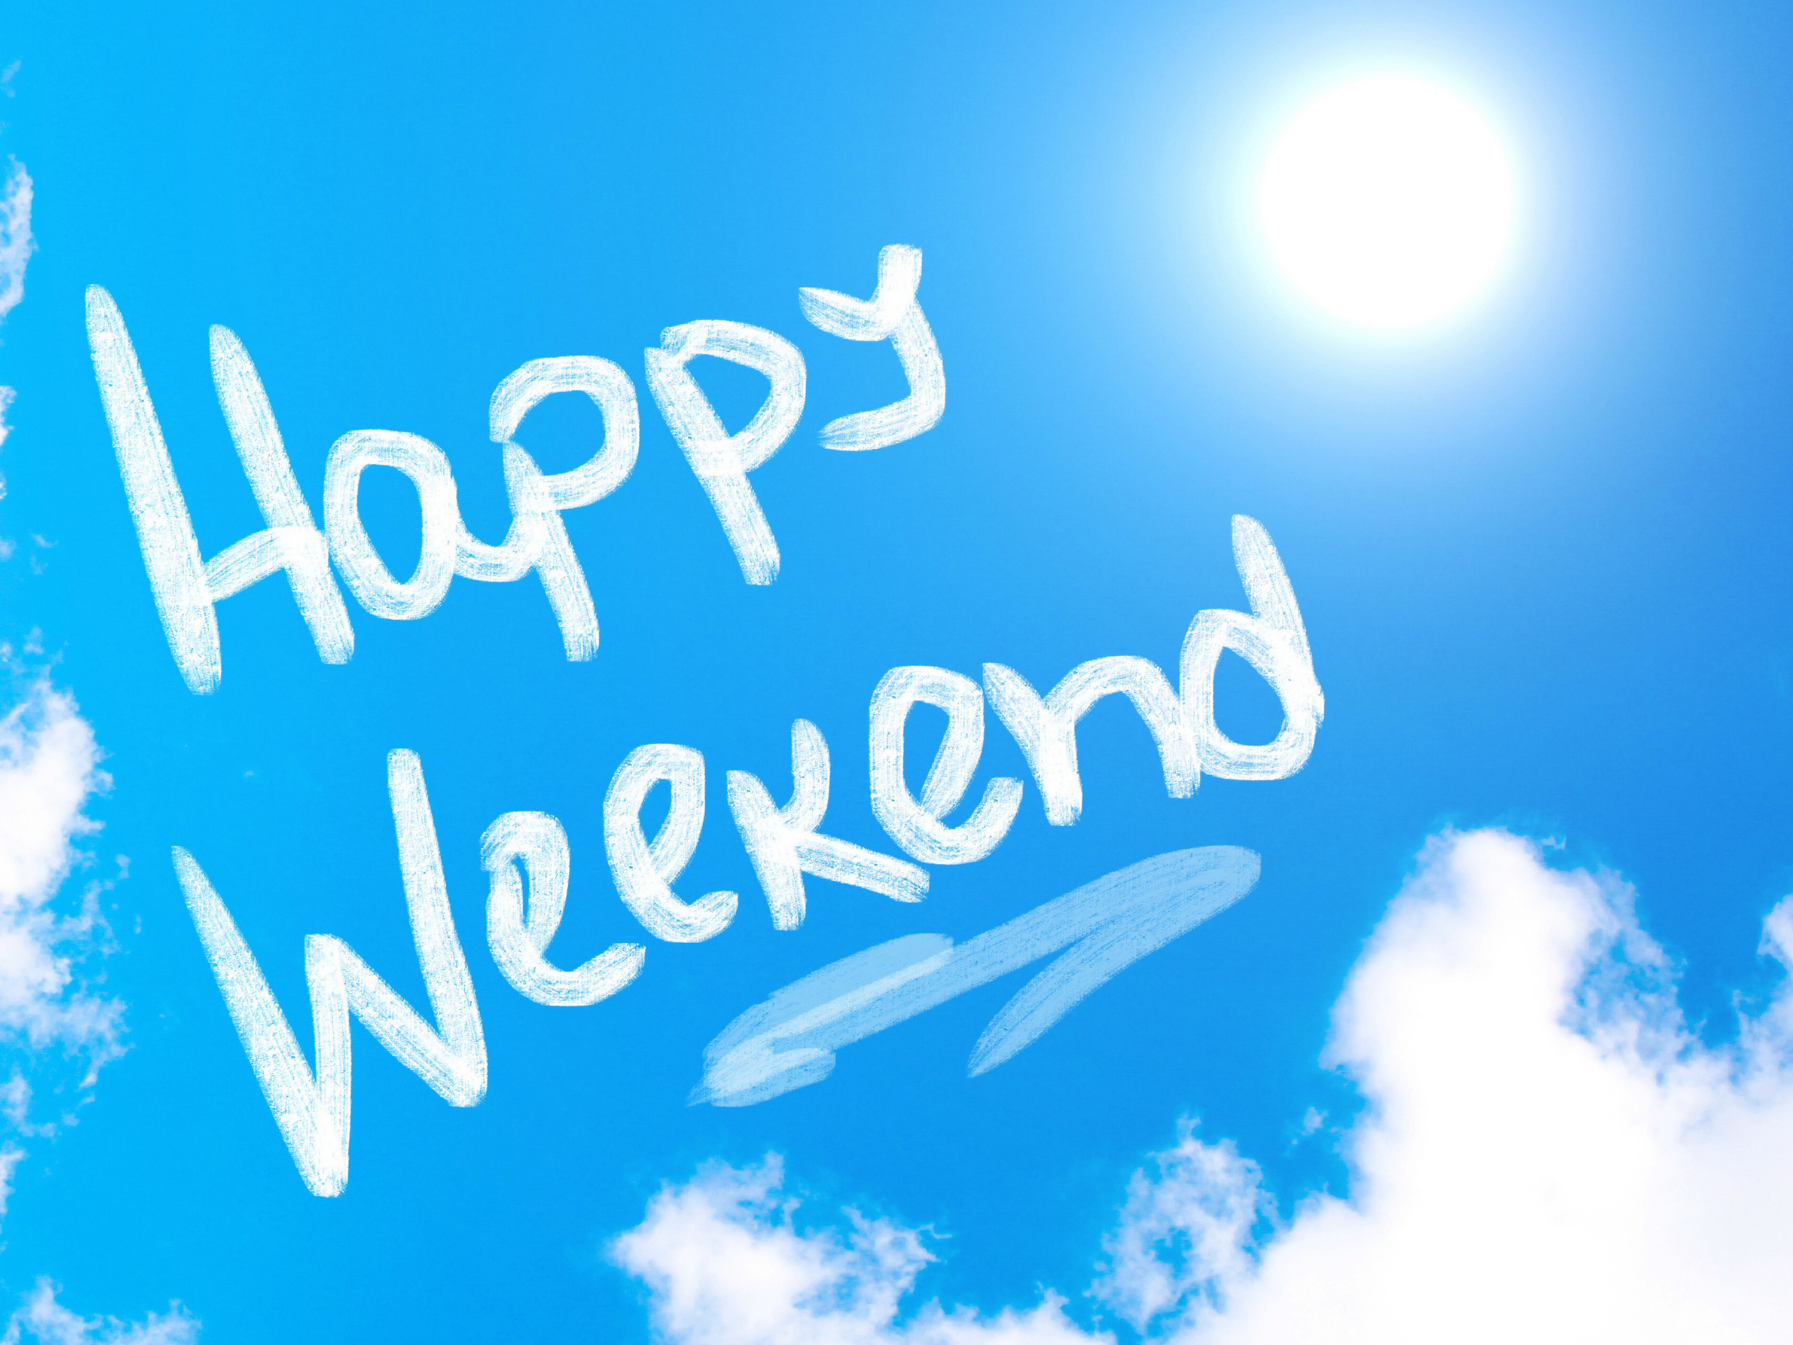 Sky writing in a blue sky "Happy Weekend"